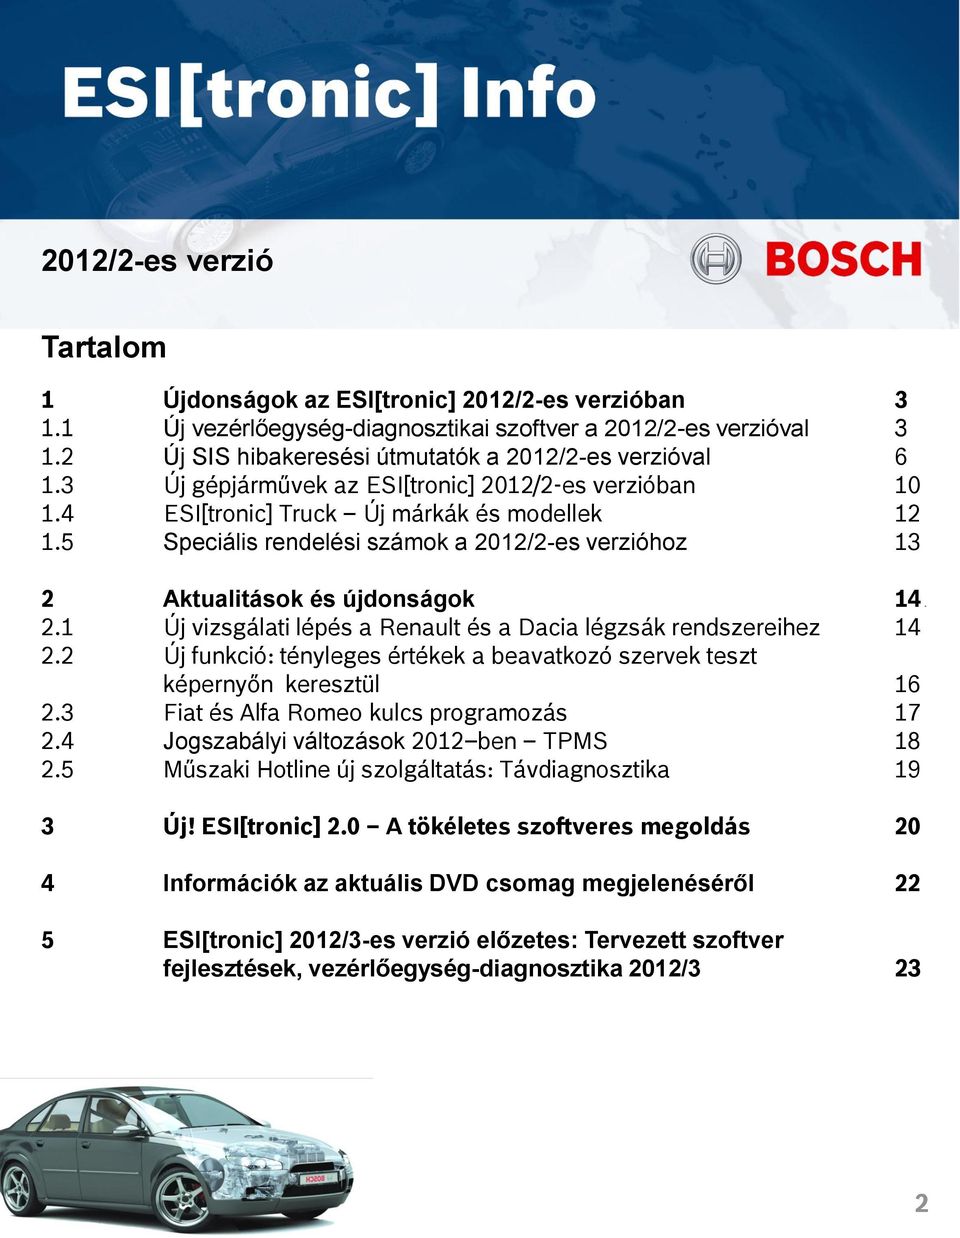 5 Speciális rendelési számok a 2012/2-es verzióhoz 13 2 Aktualitások és újdonságok 14 13 2.1 Új vizsgálati lépés a Renault és a Dacia légzsák rendszereihez 14 2.